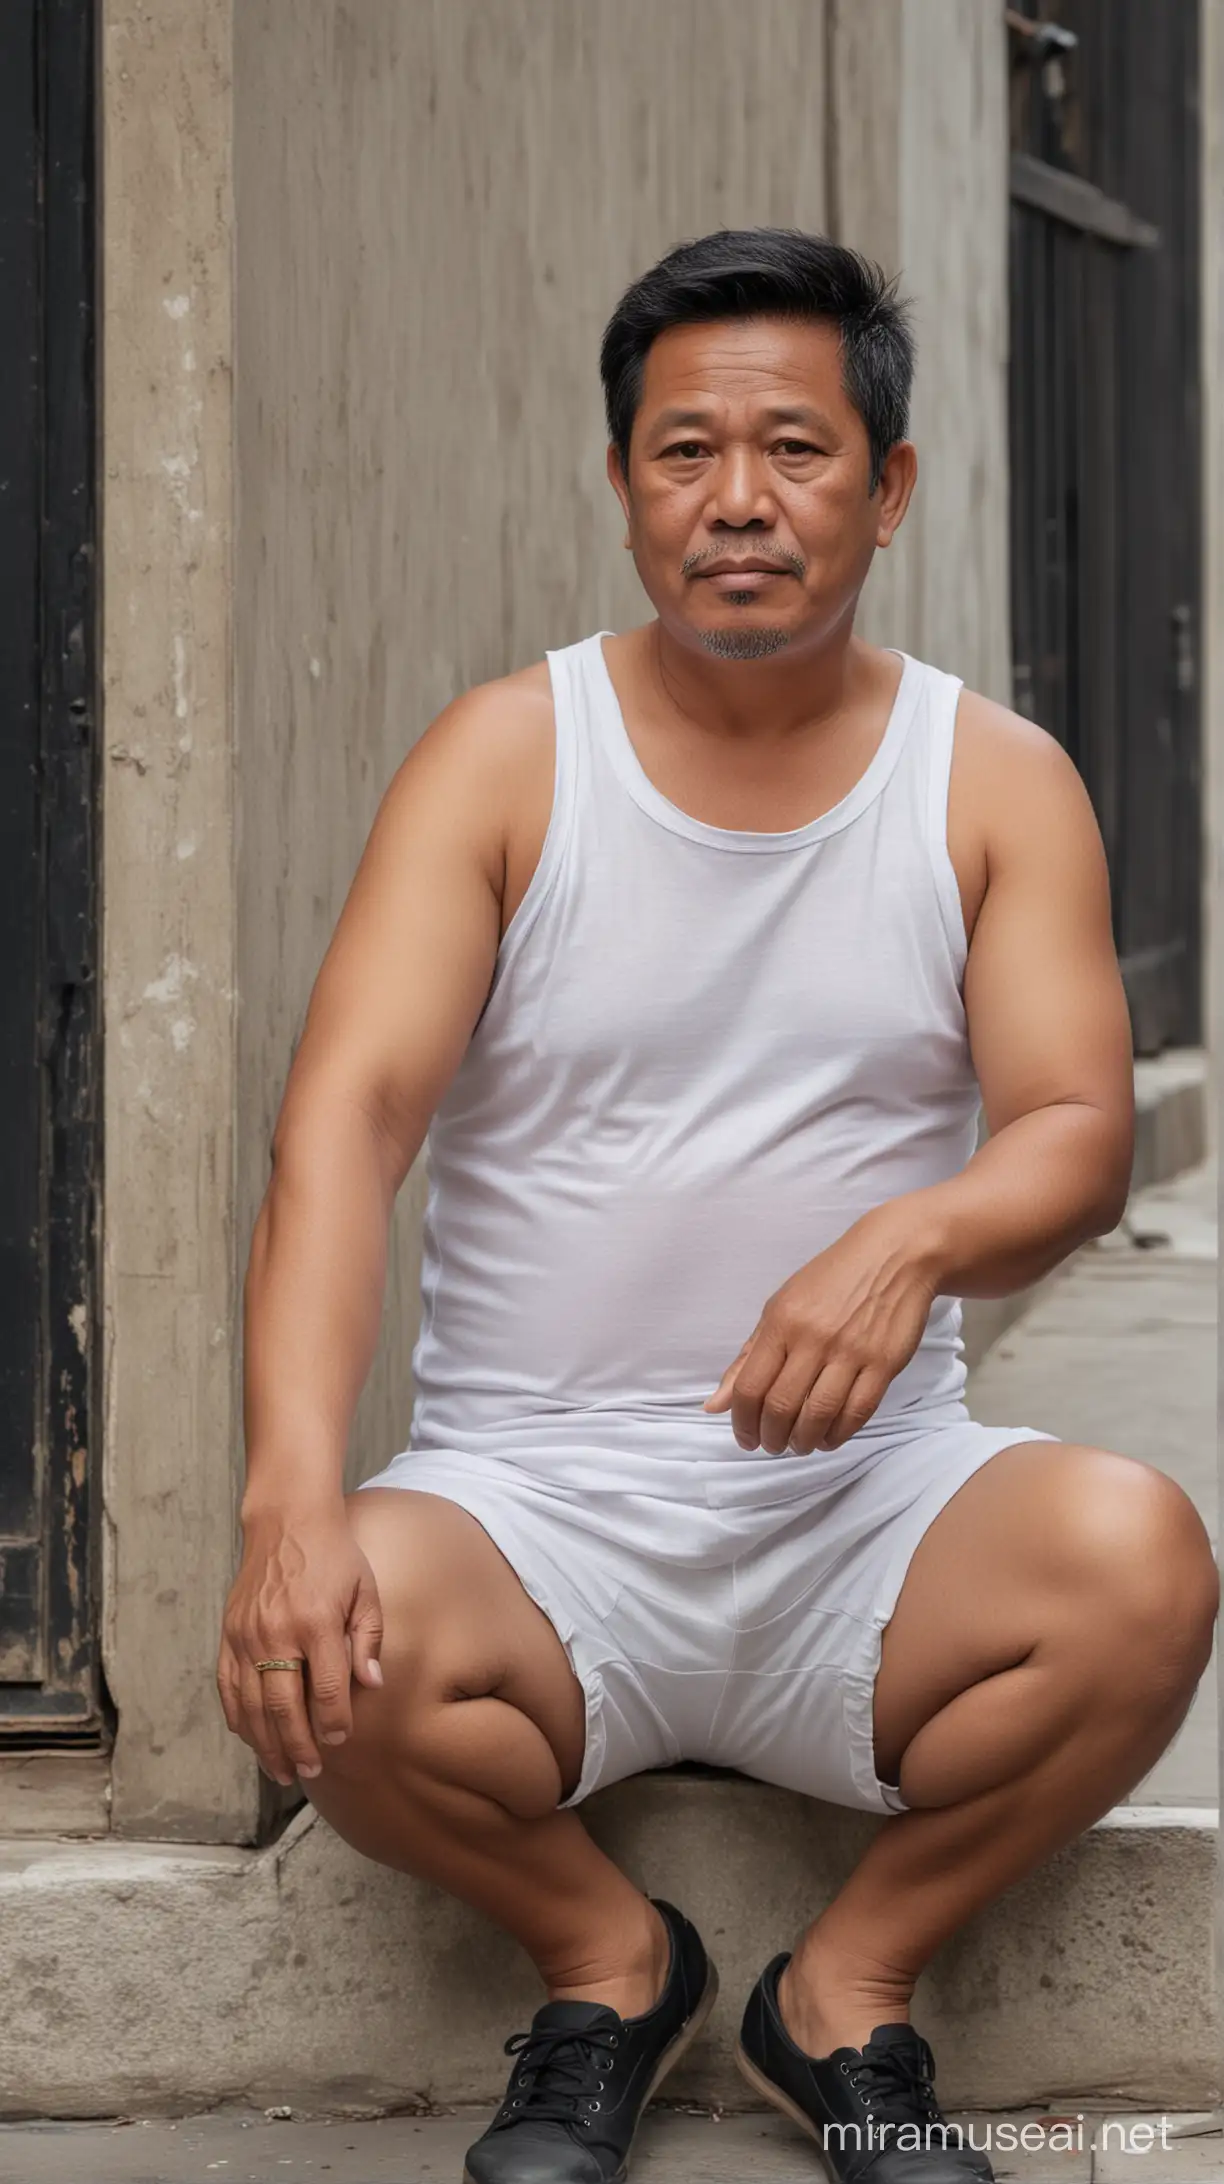 Foto realistis,bapak bapak indonesia usia 55 tahun badan gemuk,rambut hitam rapi belah tepi,memakai baju tank top putih dan celana pendek tipis,sedang duduk di jalan yang sepi,